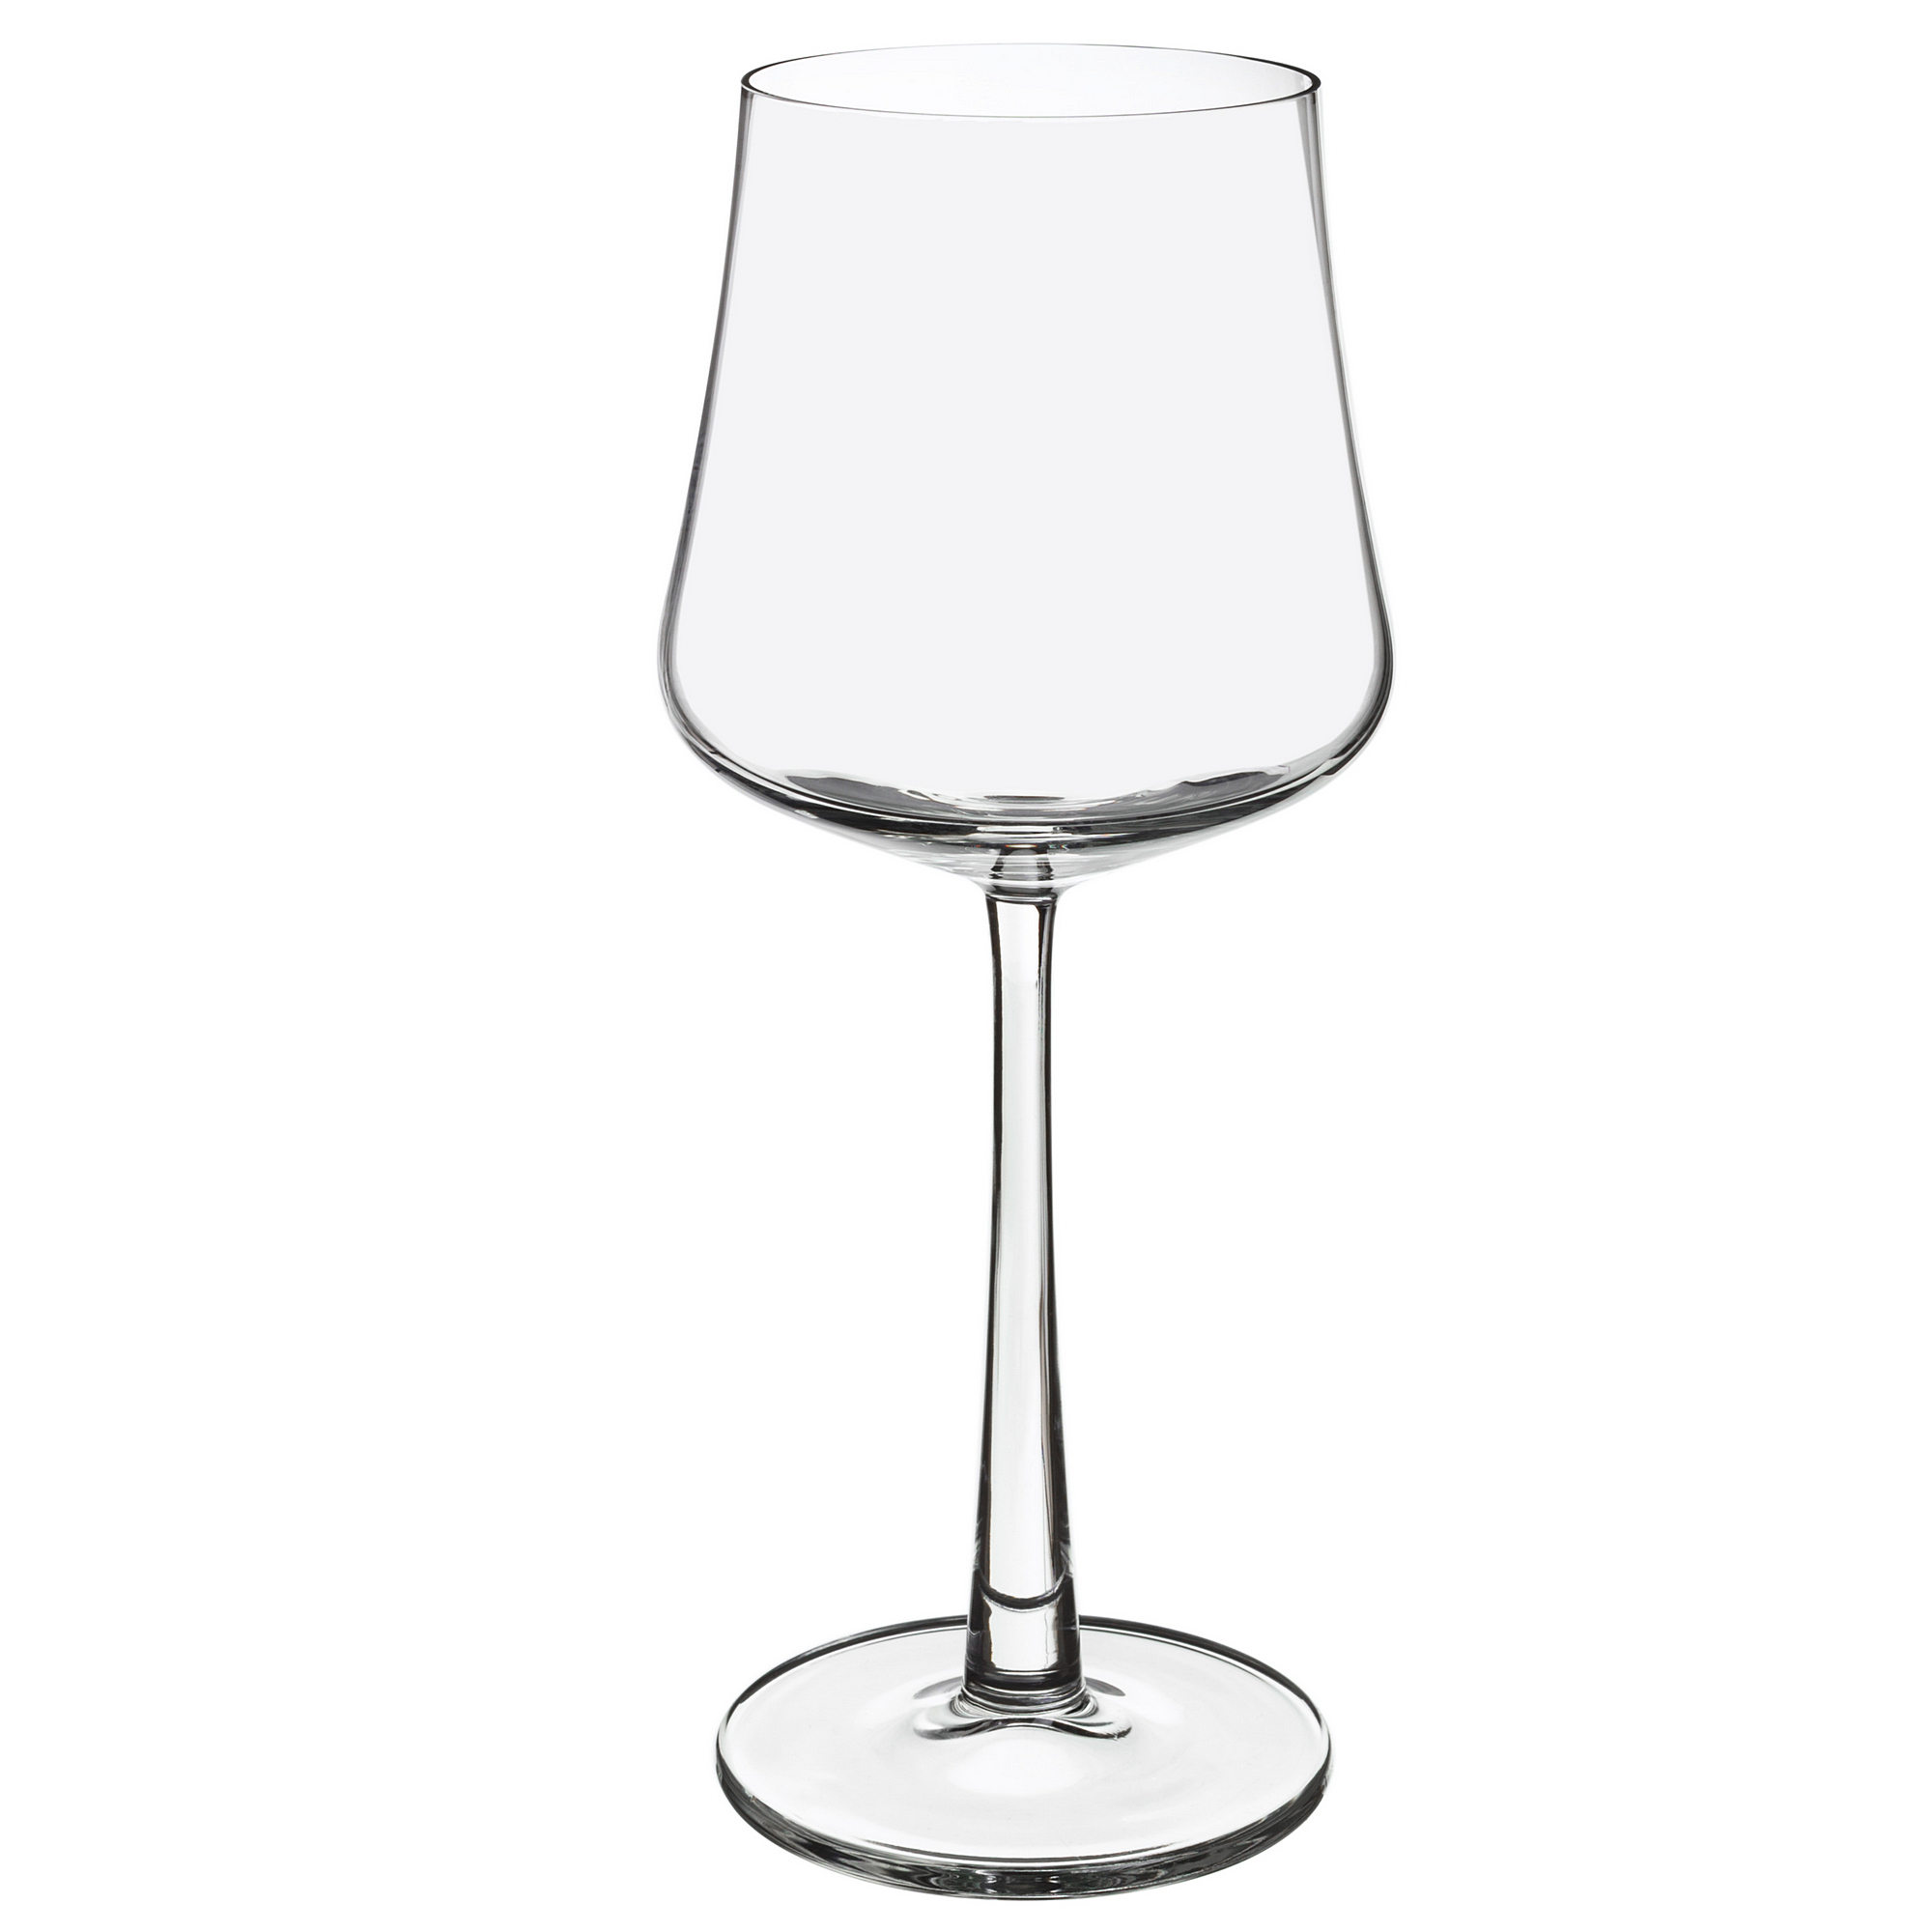 Набор бокалов для белого вина 4шт 290мл Royal leerdam novum 383522 adriana бокалы для белого вина 6 шт